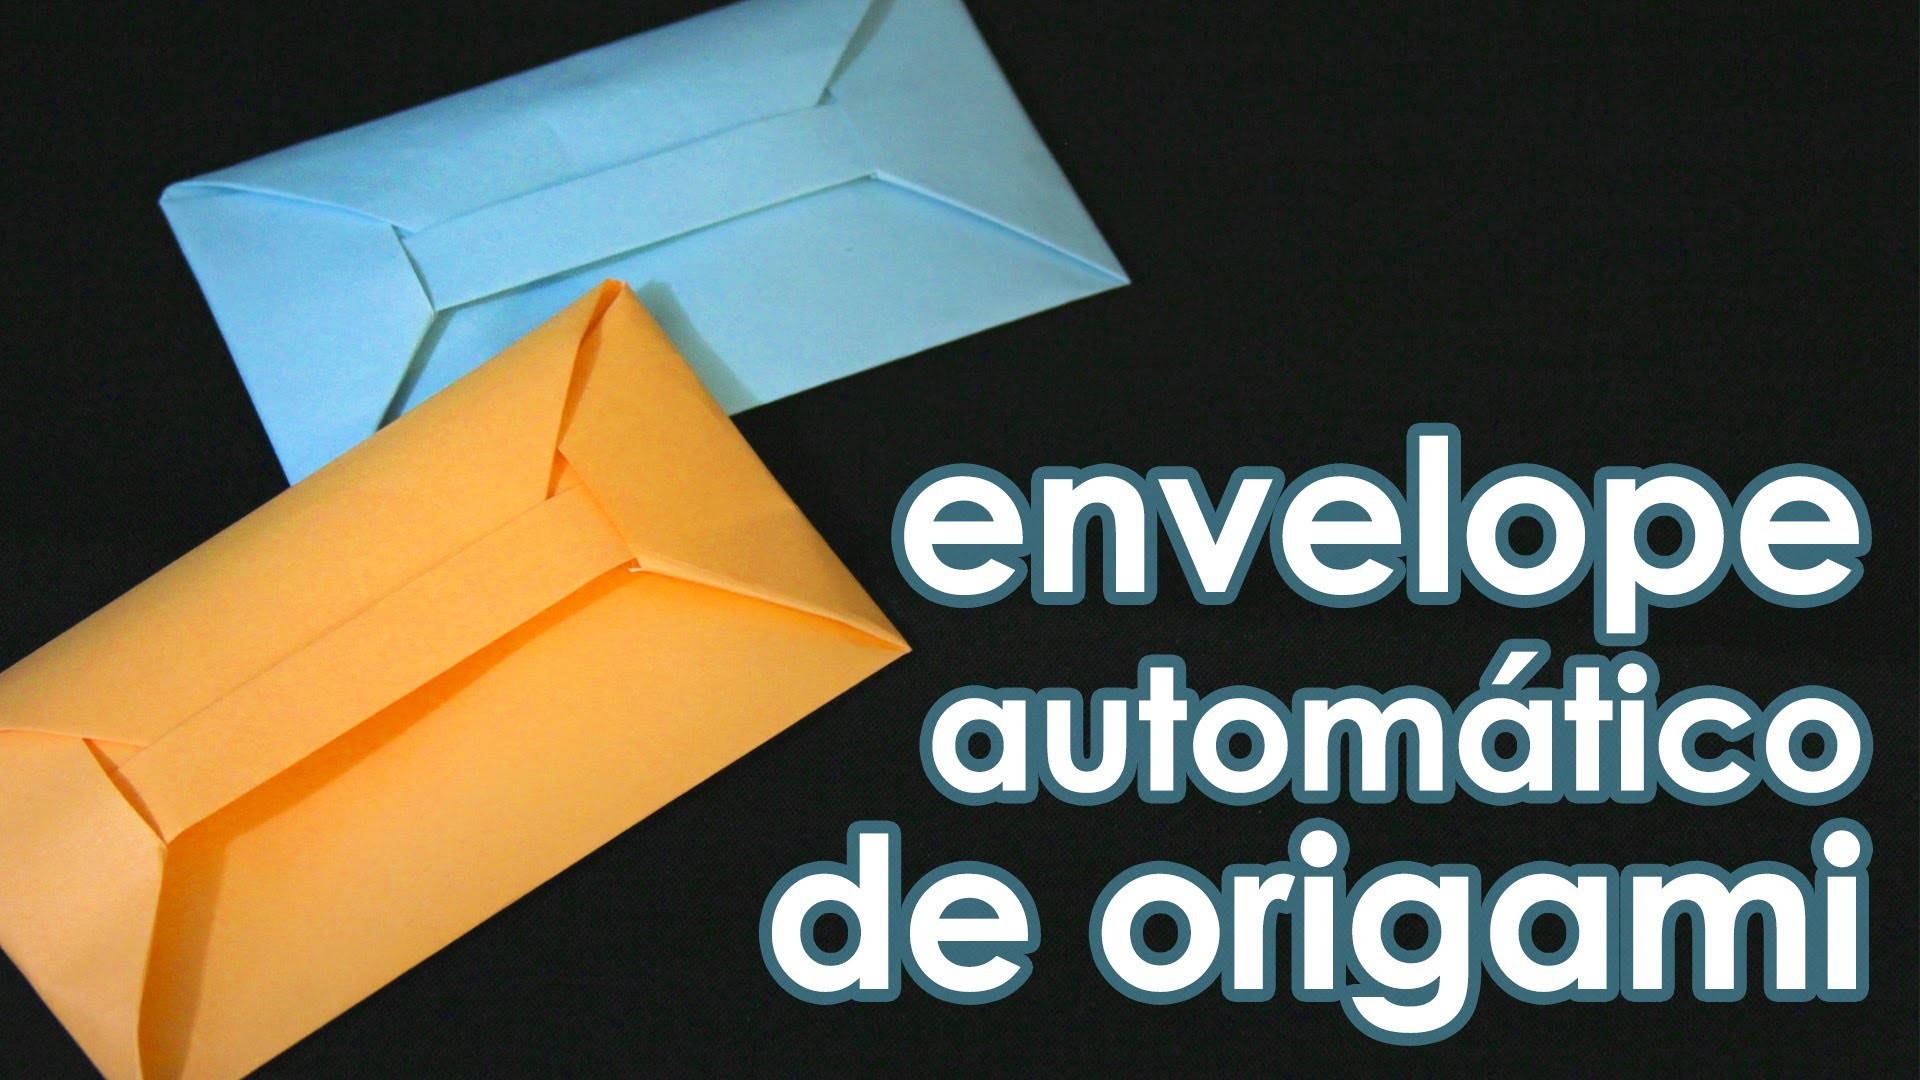 Envelope automático de origami